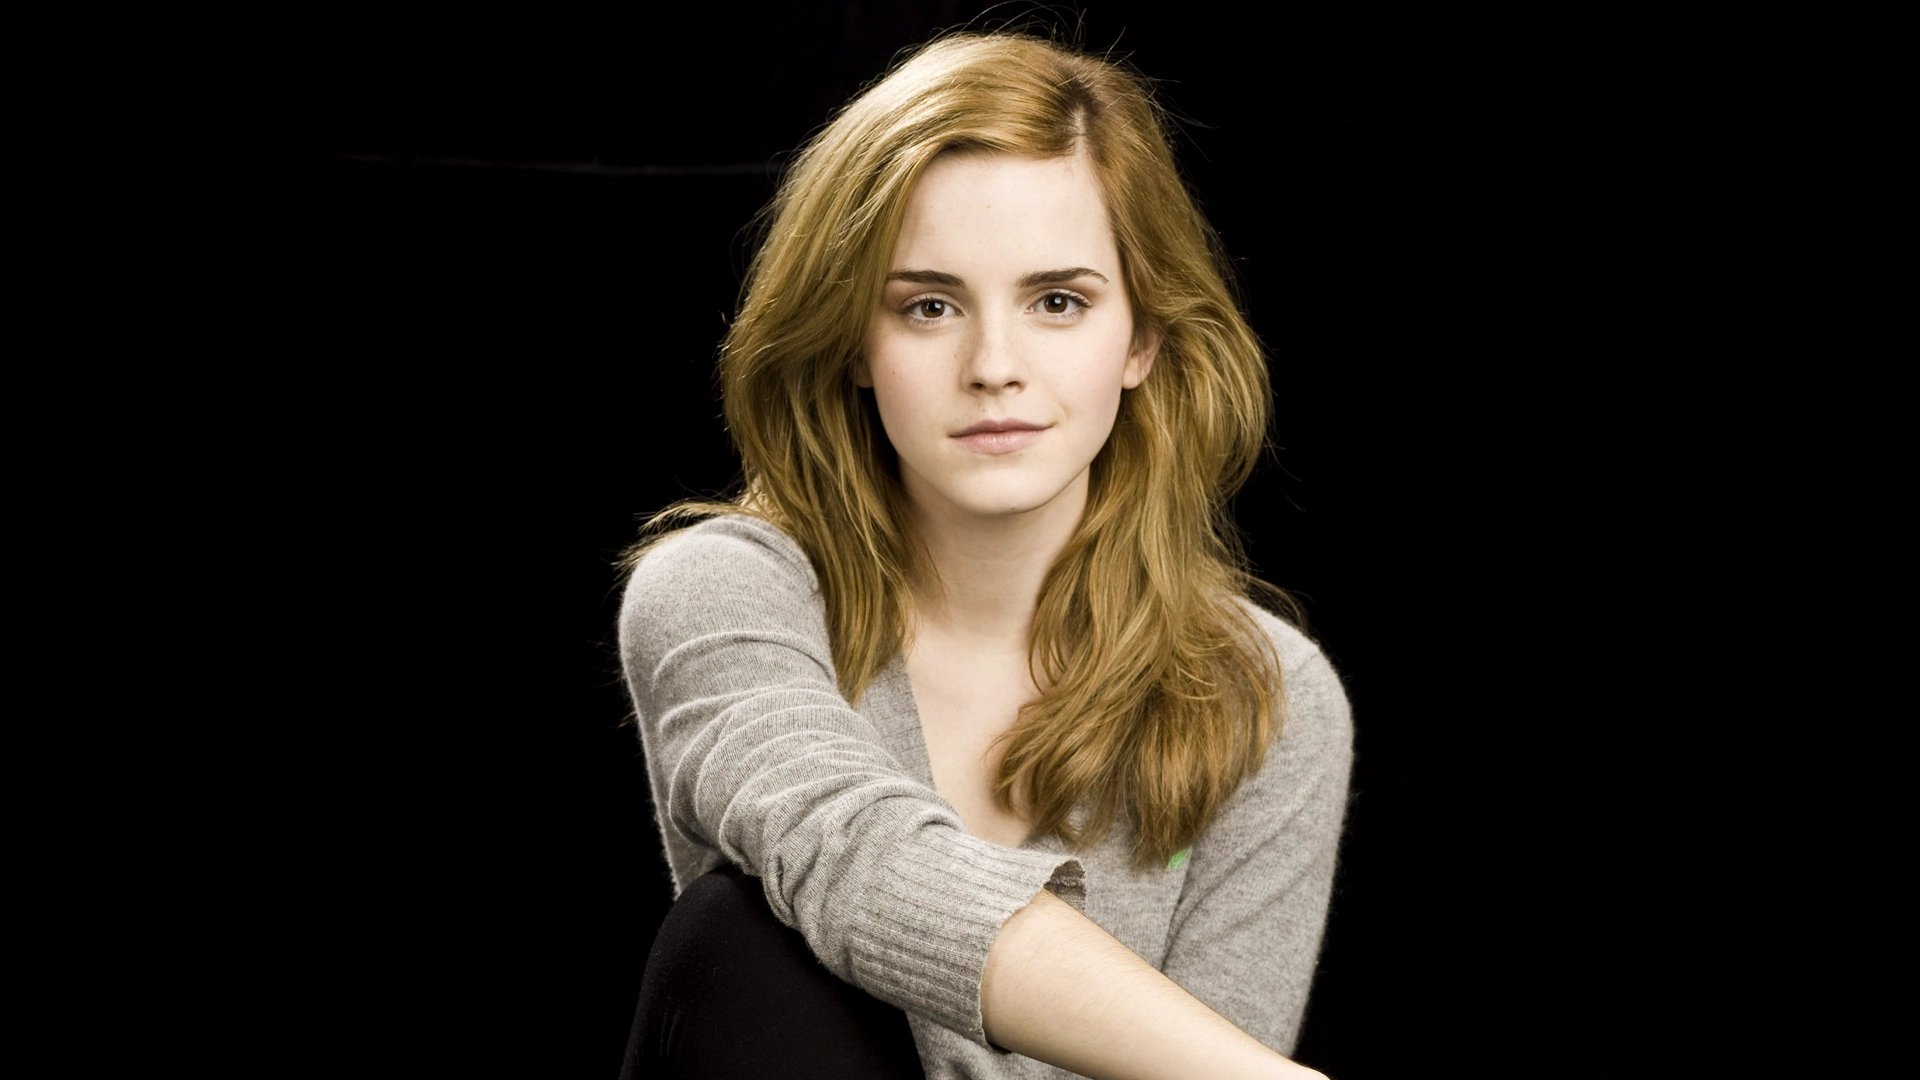 Emma Watson Biography, Age, Boyfriend, Husband and Family - StarsUnfolded